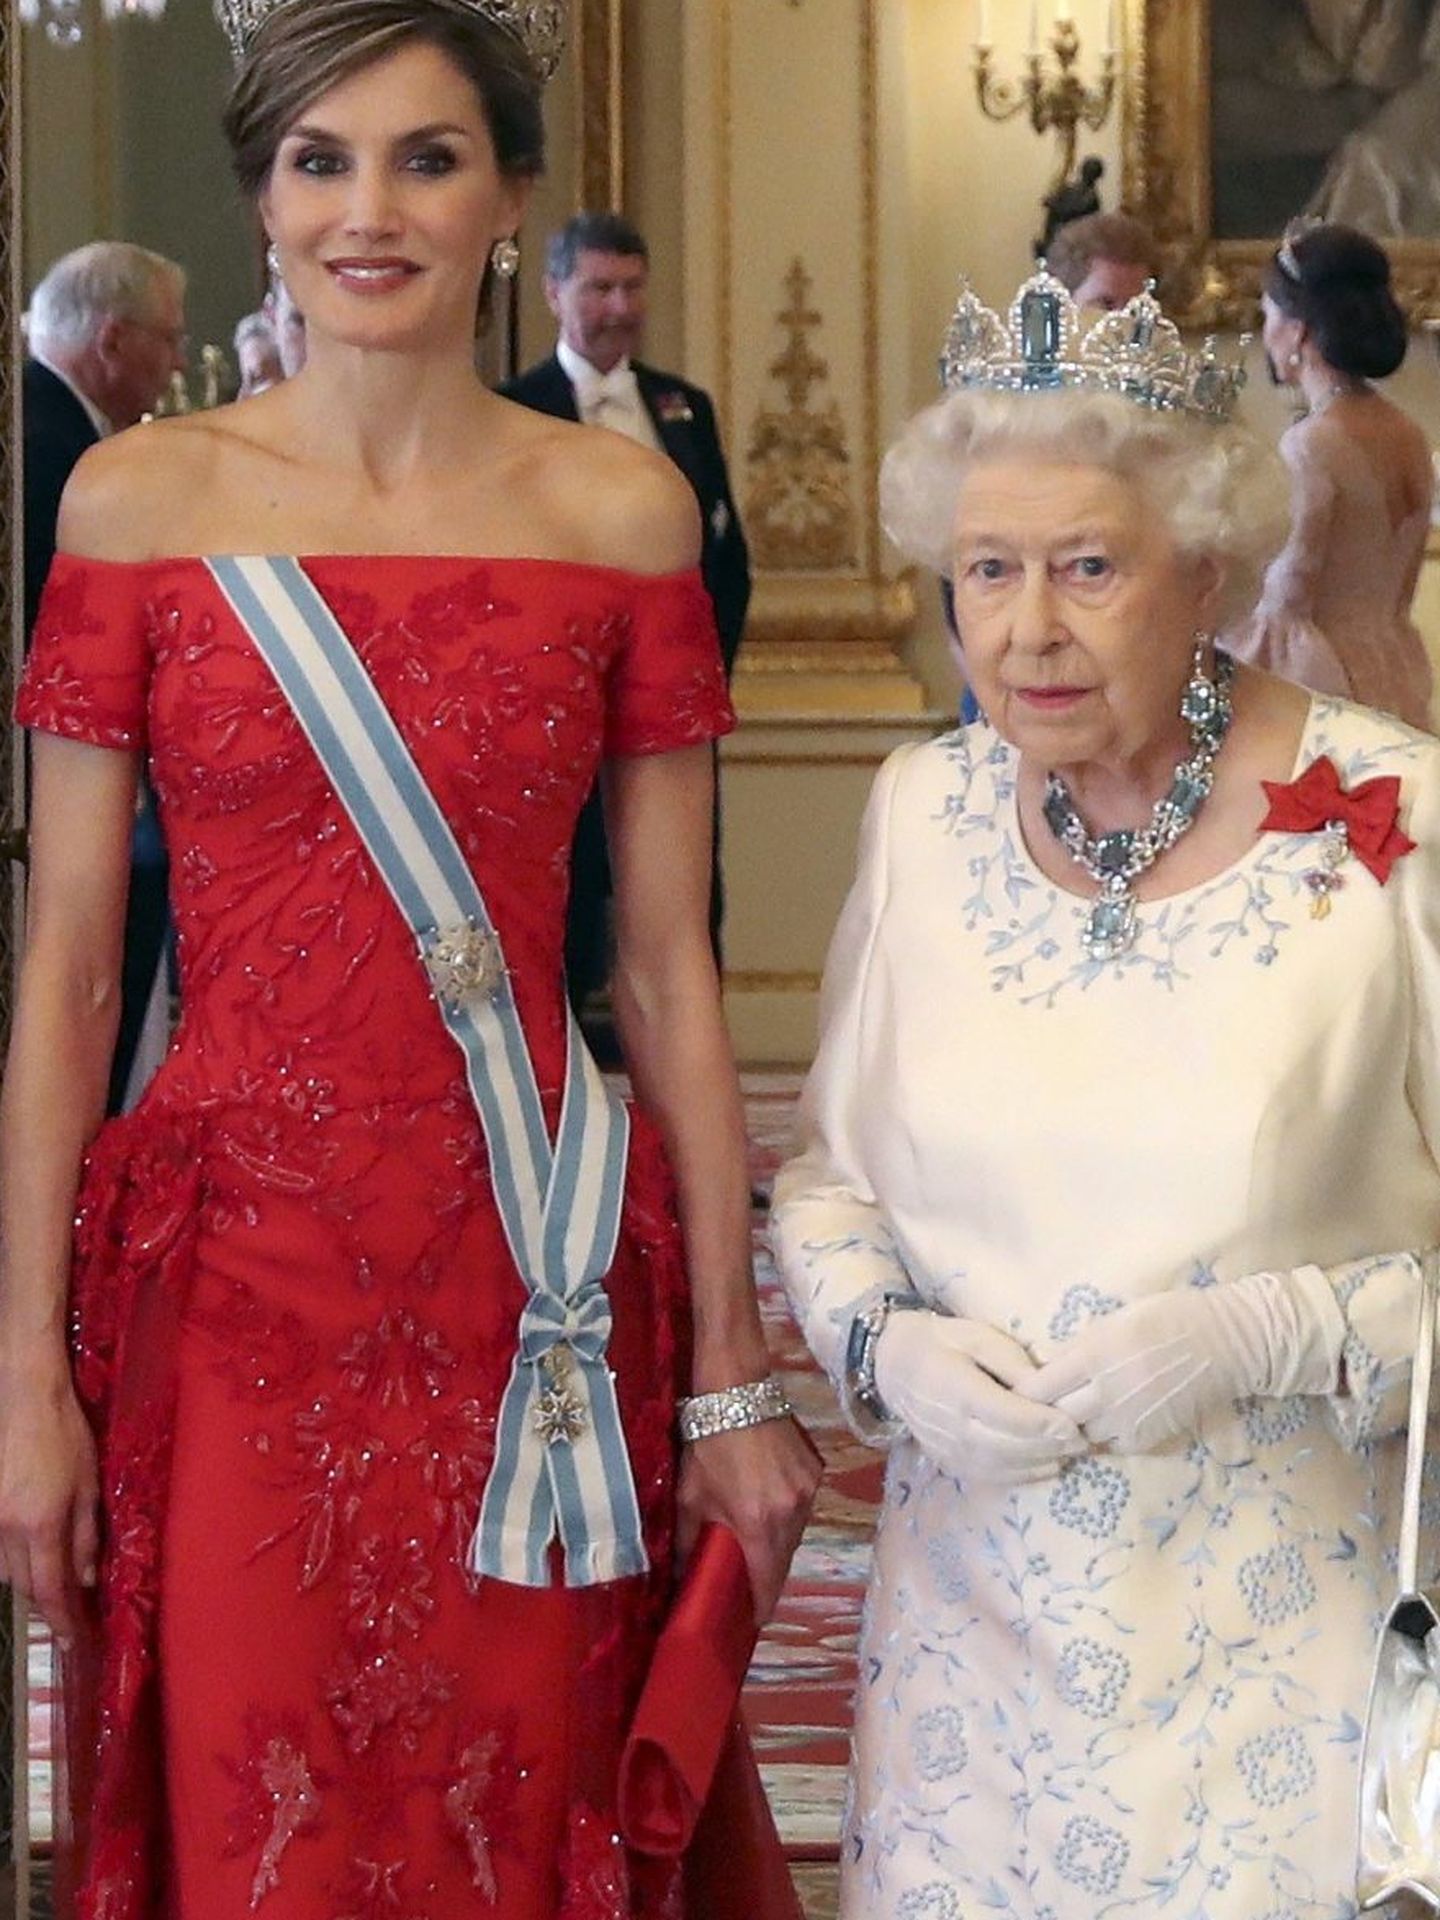 LON796. LONDRES (REINO UNIDO), 12 07 2017.- La Reina Isabel II (2d), el Rey Felipe VI (d), el Duque de Edimburgo (i) y la Reina Letizia (2i) asisten a una cena oficial hoy, miércoles 12 de julio de 2017, en Londres (Reino Unido). Los Reyes de España realizan una visita de estado de tres días al Reino Unido. EFE BALLESTEROS